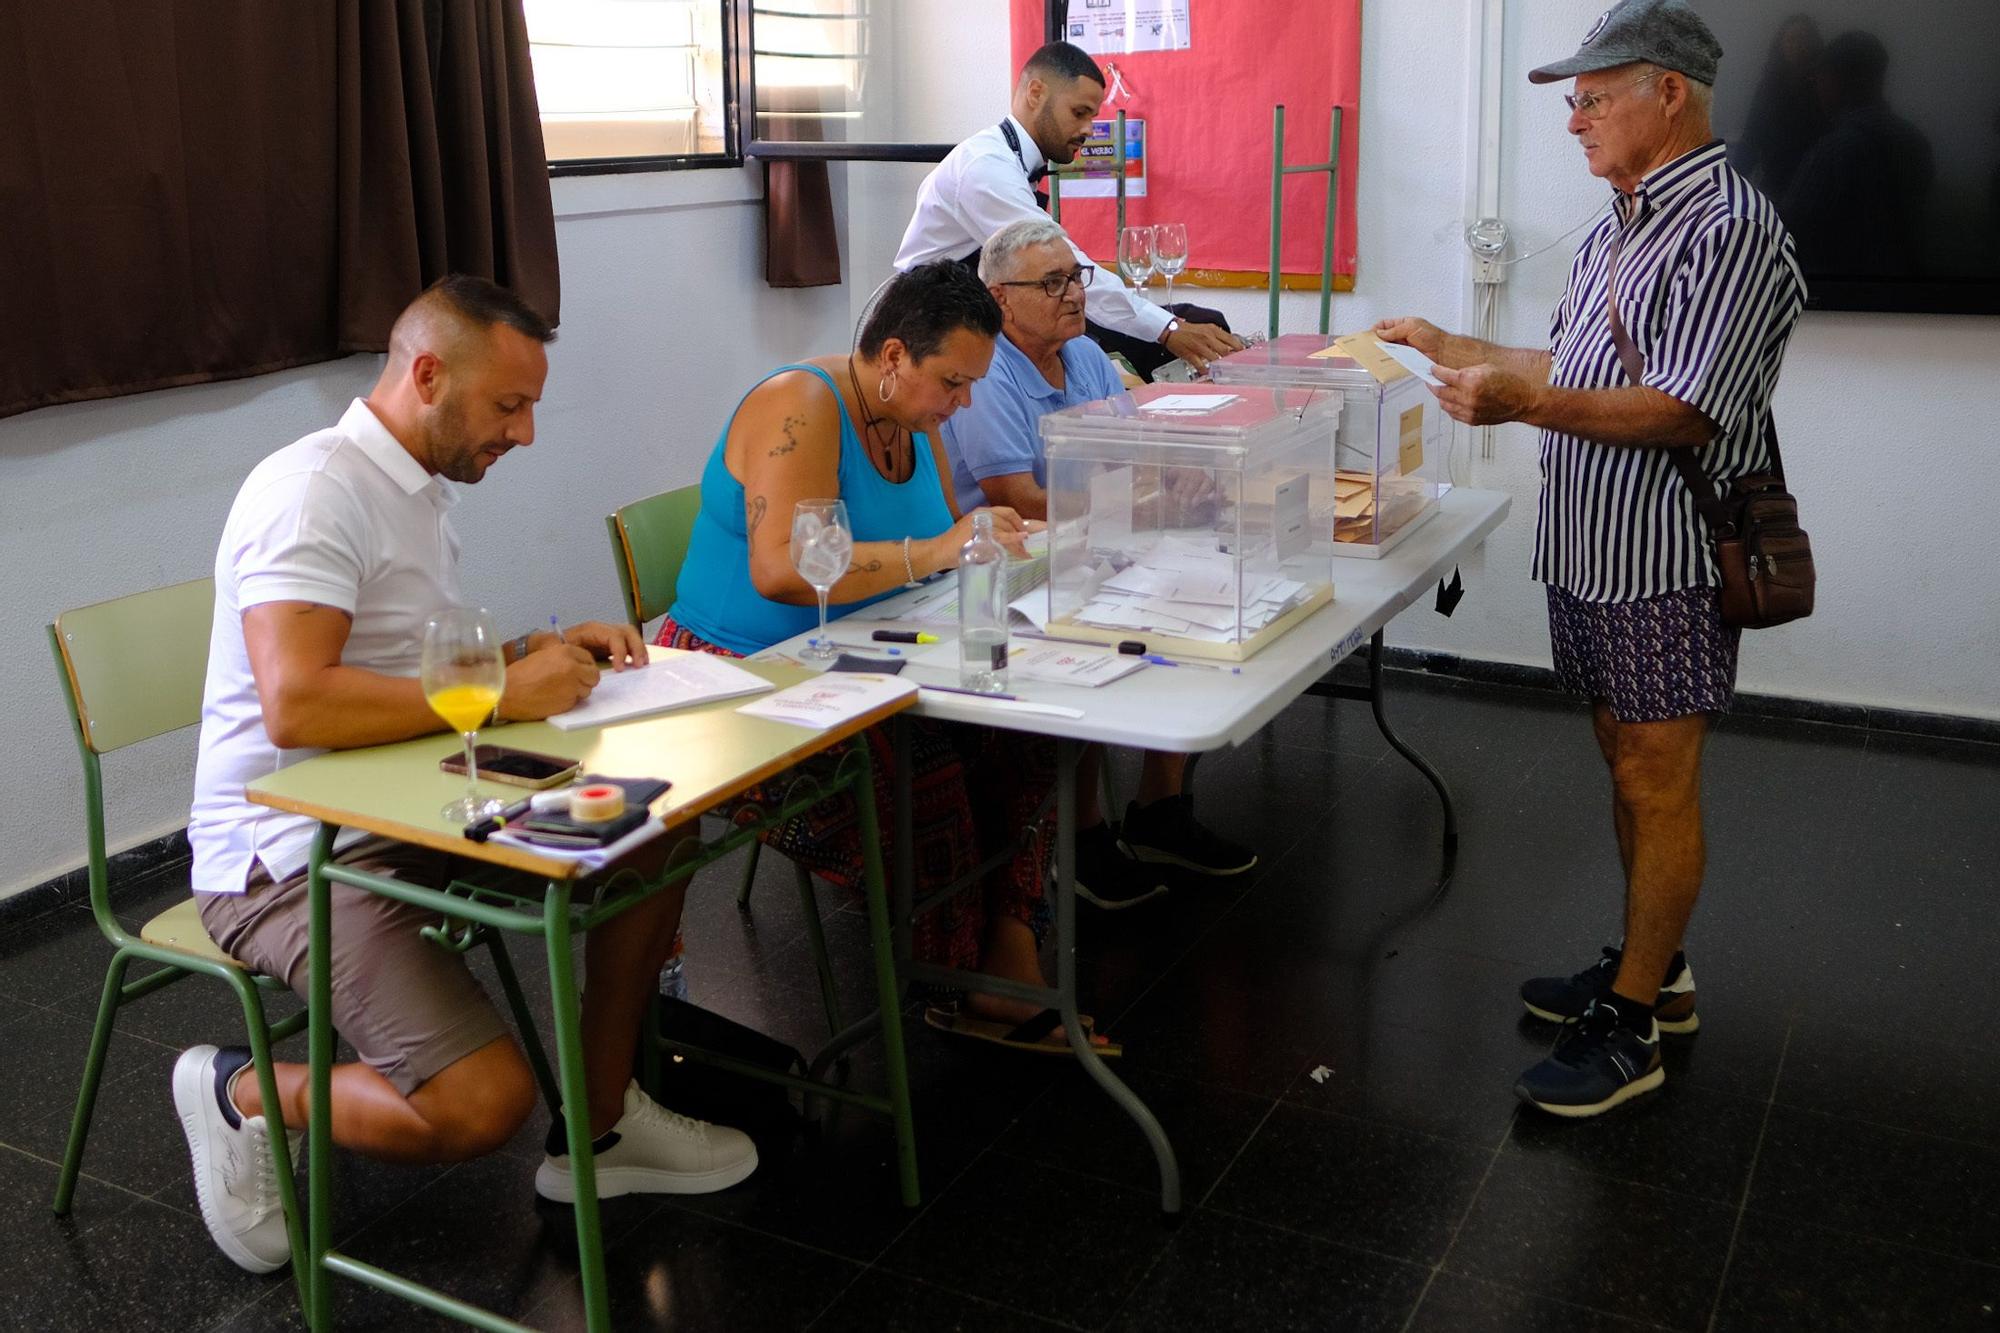 Elecciones 23J | Jornada electoral en Mogán